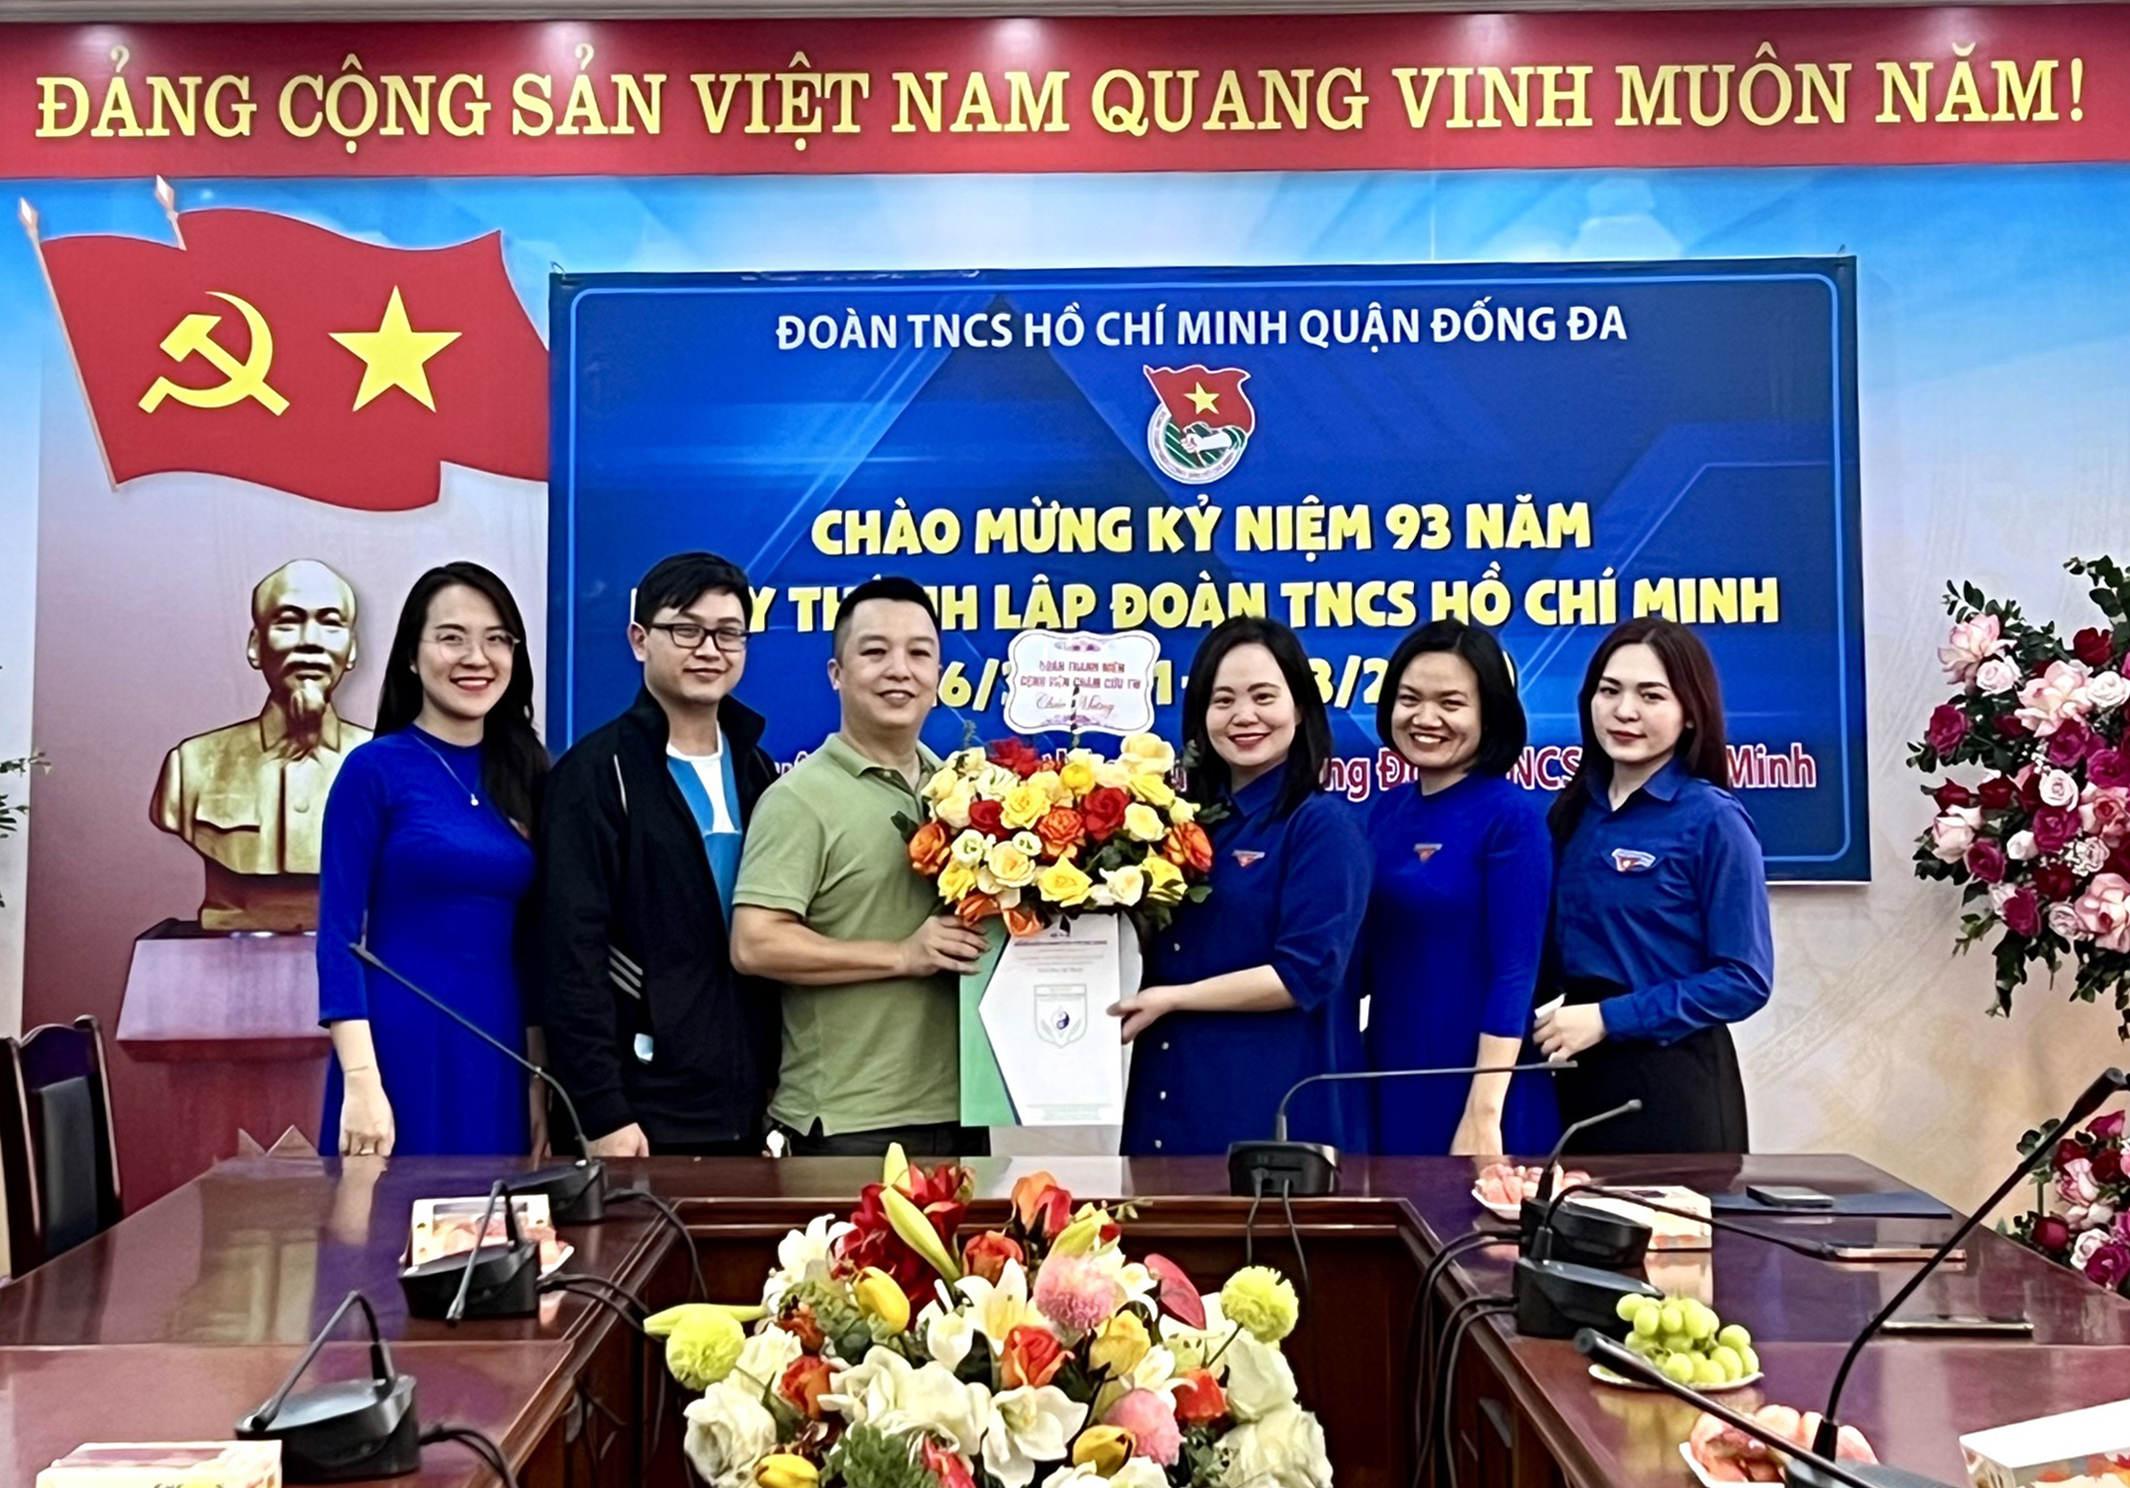 BCH Đoàn TNCS Hồ Chí Minh Bệnh viện tặng hoa chúc mừng Quận Đoàn Đống Đa nhân dịp kỷ niệm 93 năm ngày thành lập Đoàn TNCS Hồ Chí Minh Việt Nam, và chuỗi hoạt động kỷ niệm Tháng Thanh niên 2024